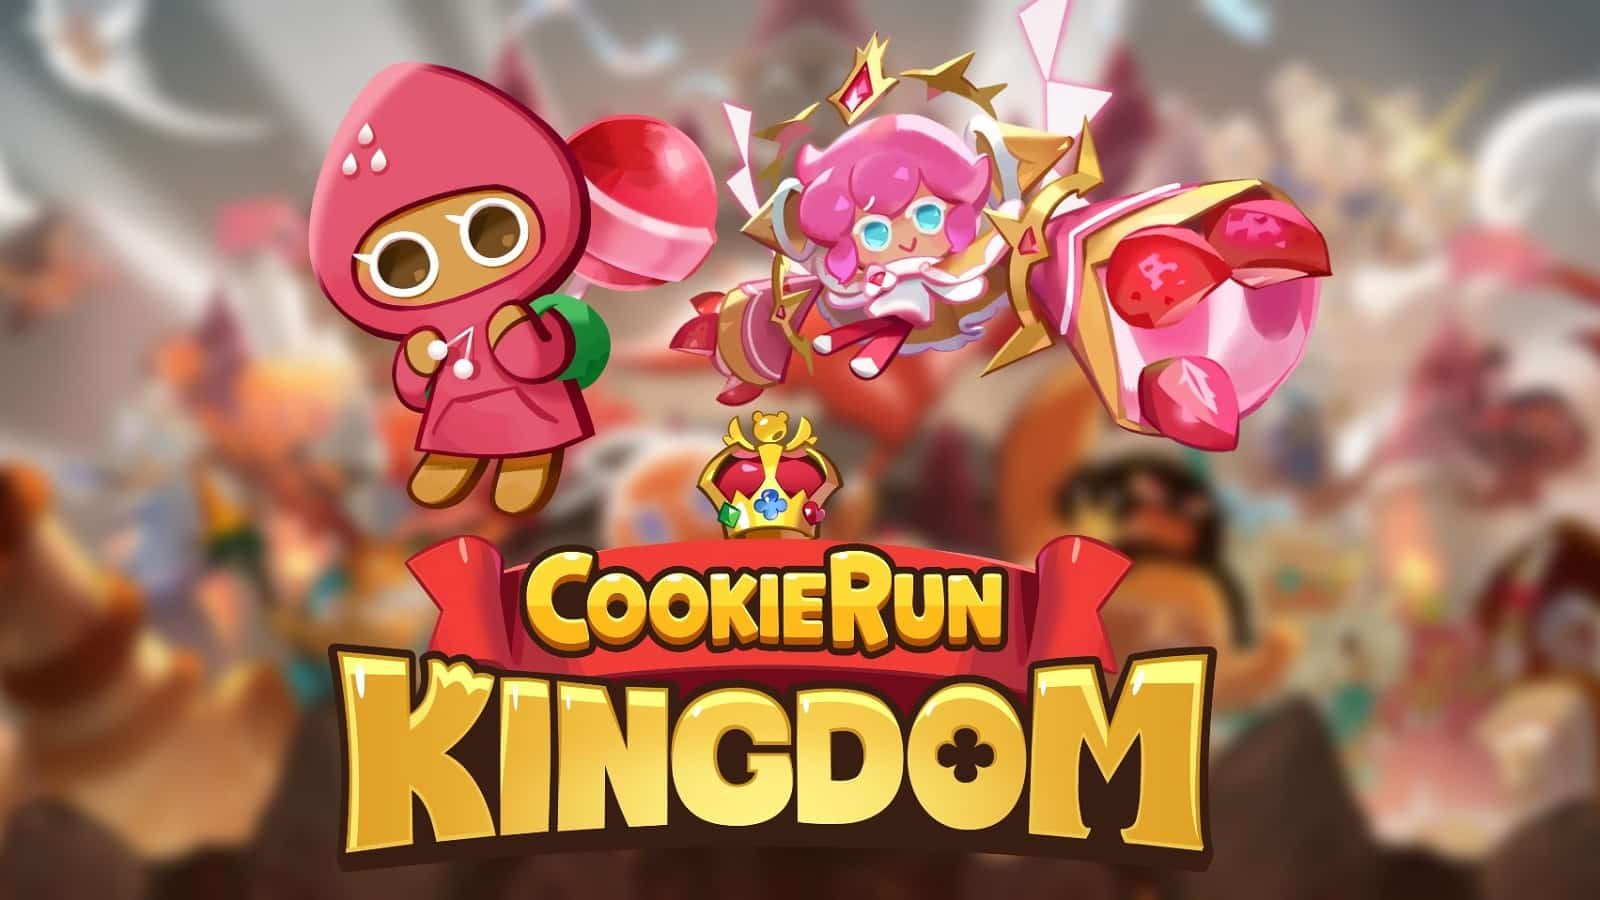 cookie-run-kingdom-erdbeerkekse-4359947